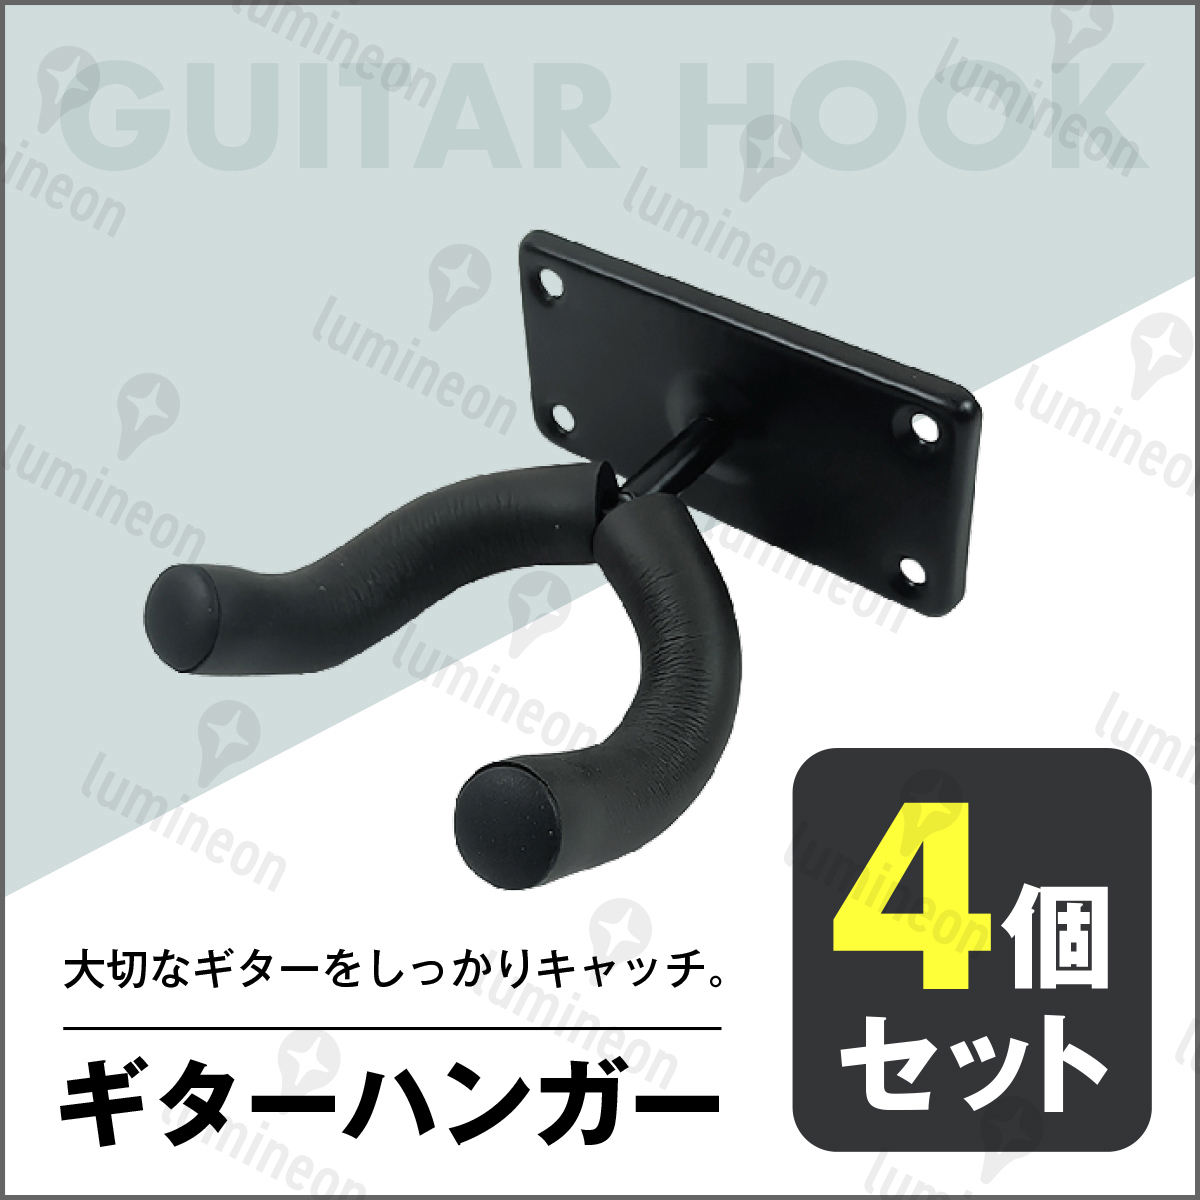 ギター ハンガー ベース 4本 セット ネジ付き 高強度 ホルダー 壁掛け フック 立て掛け ラック ホルダー スタンド 収納 小物 楽器 g054 3_画像1